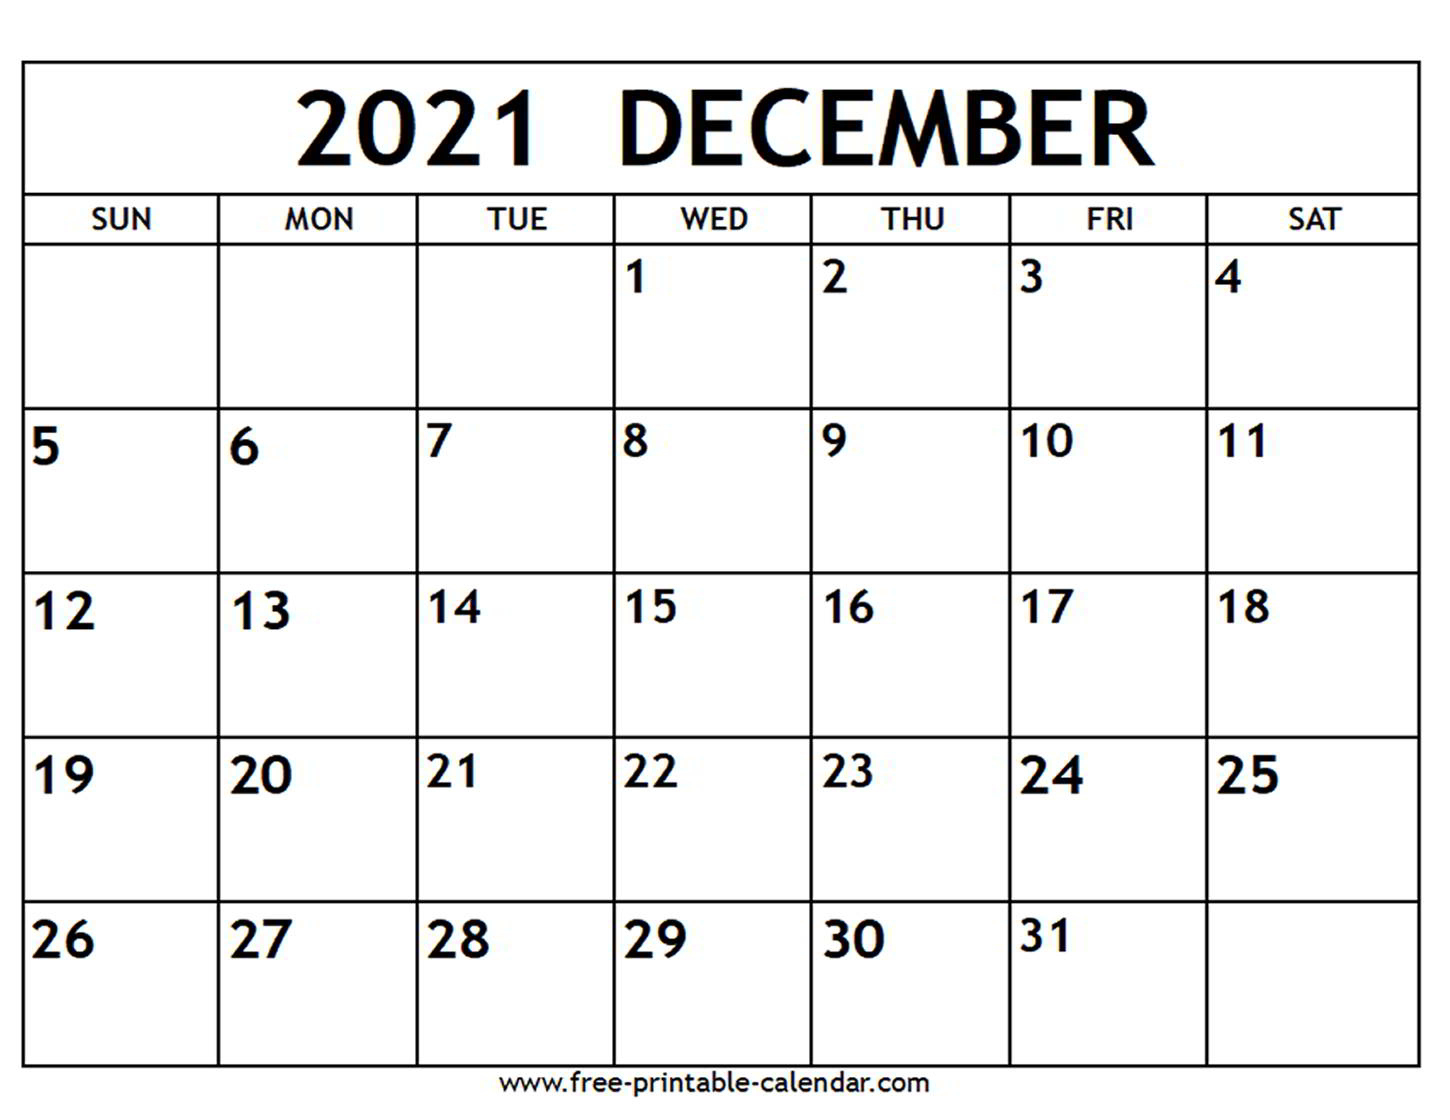 December 2021 Calendar Printable | Example Calendar Printable January - December 2021 Calendar Printable